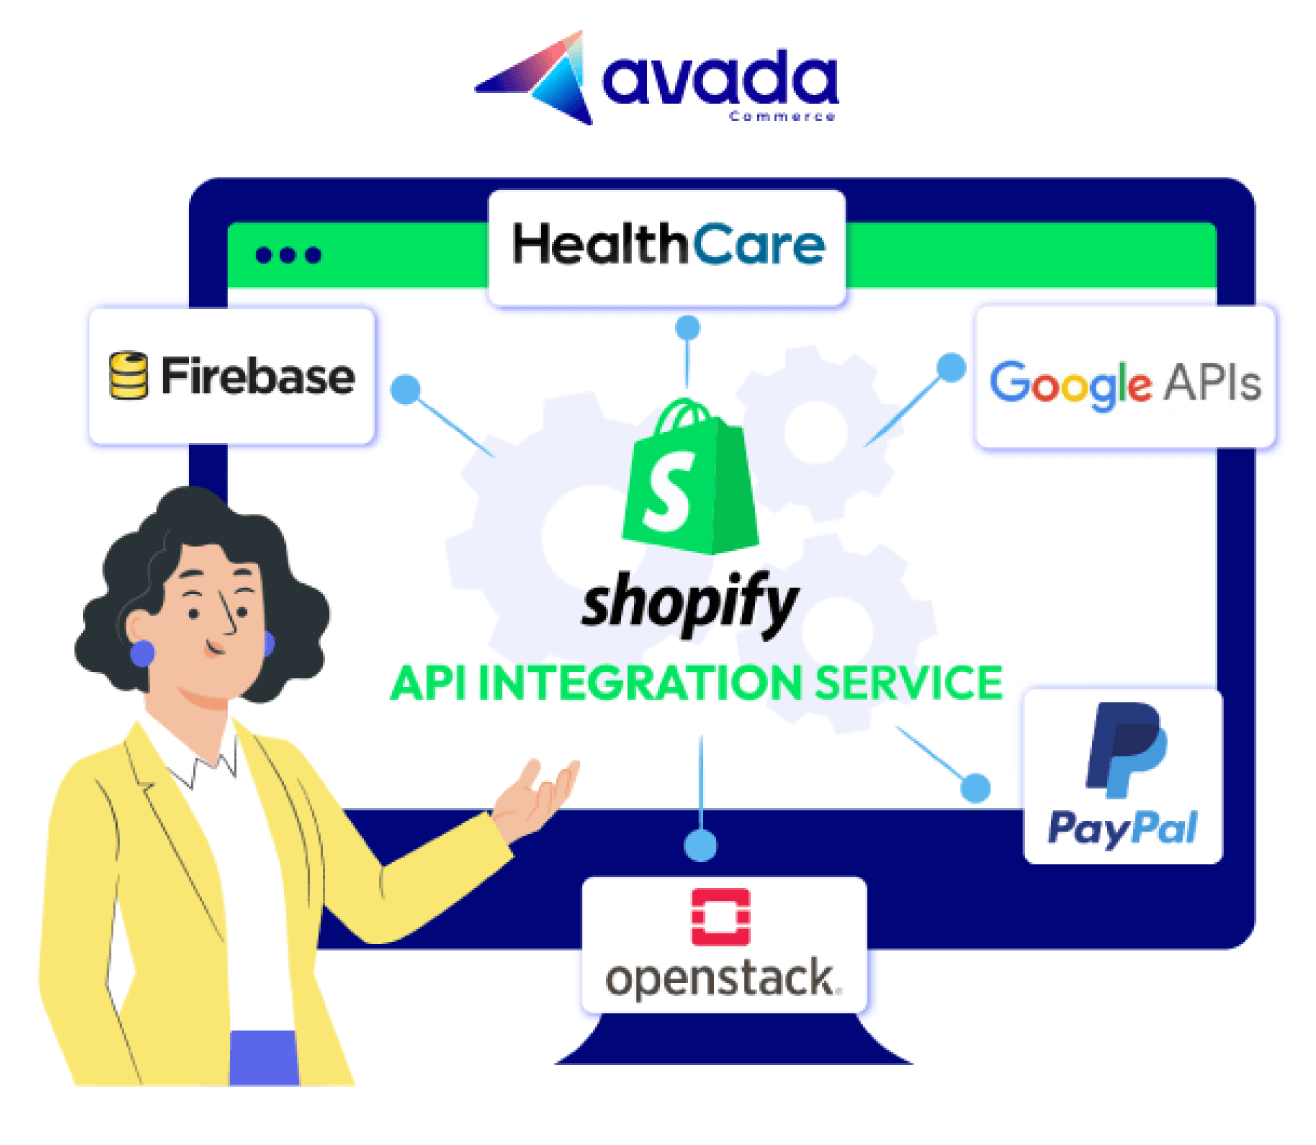 Shopify API Integration Service